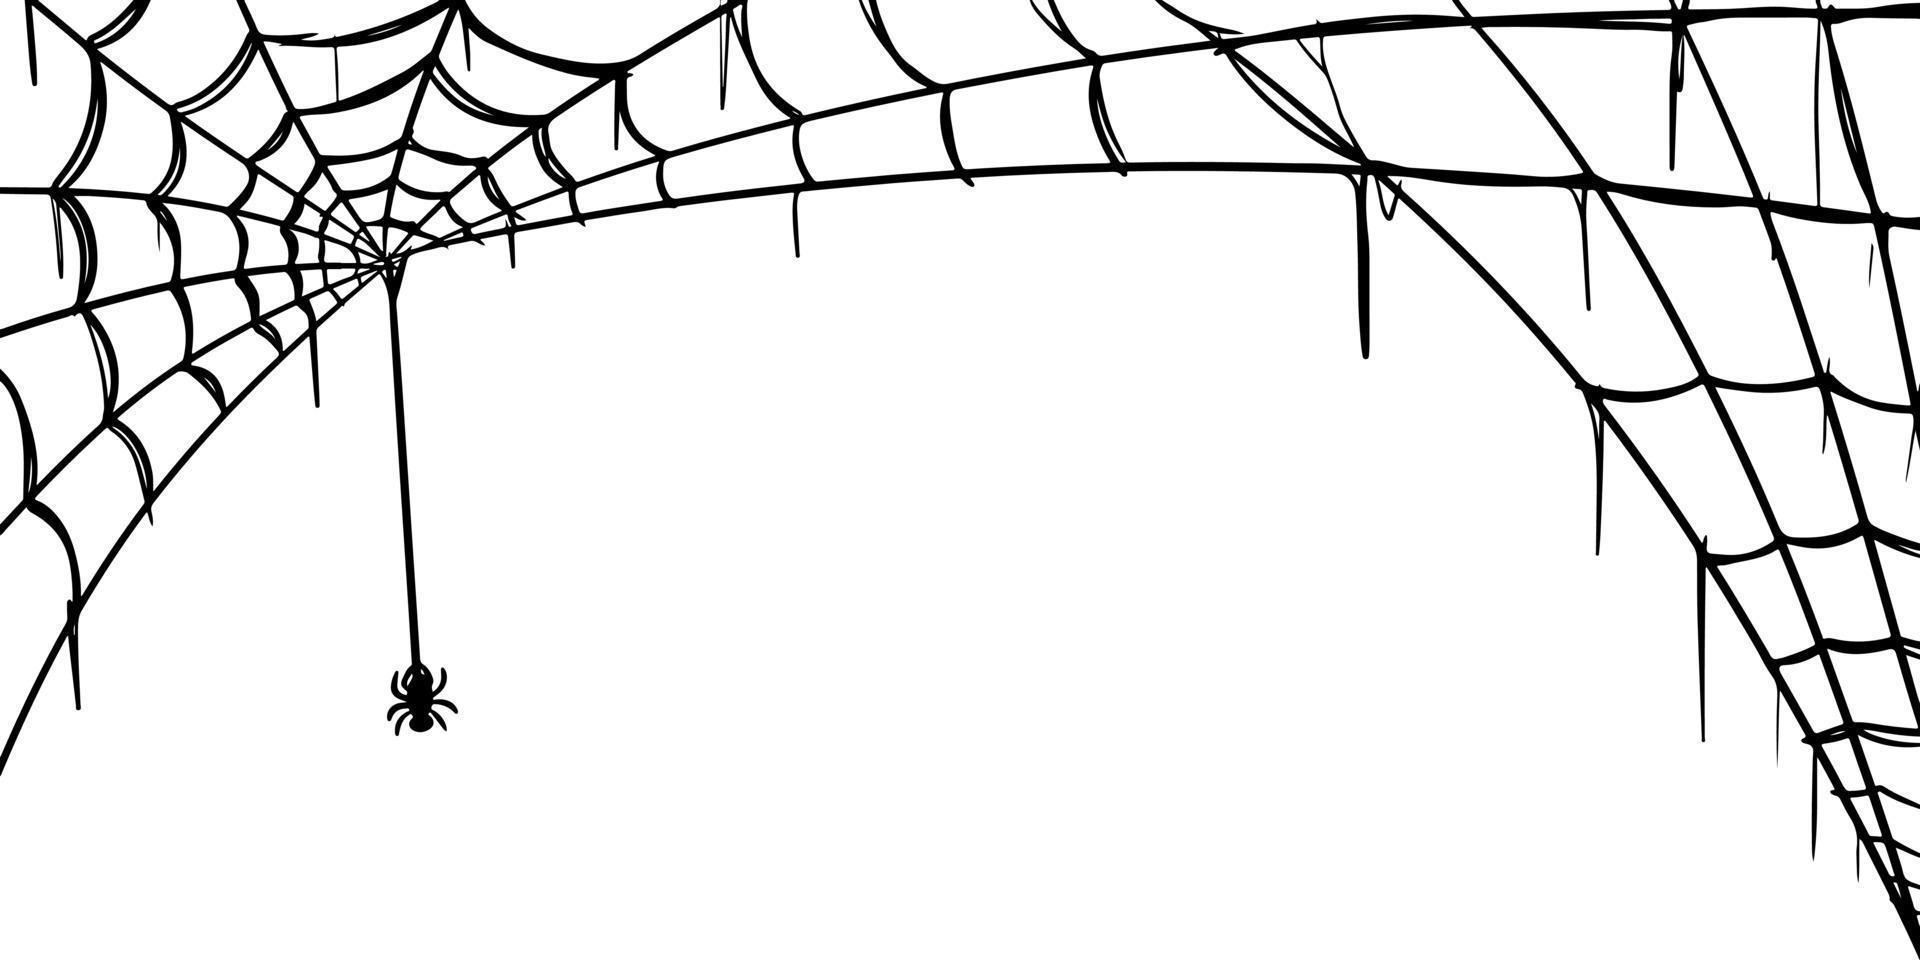 ragnatela set isolato su sfondo bianco. doodle illustrazione vettoriale di ragnatela.